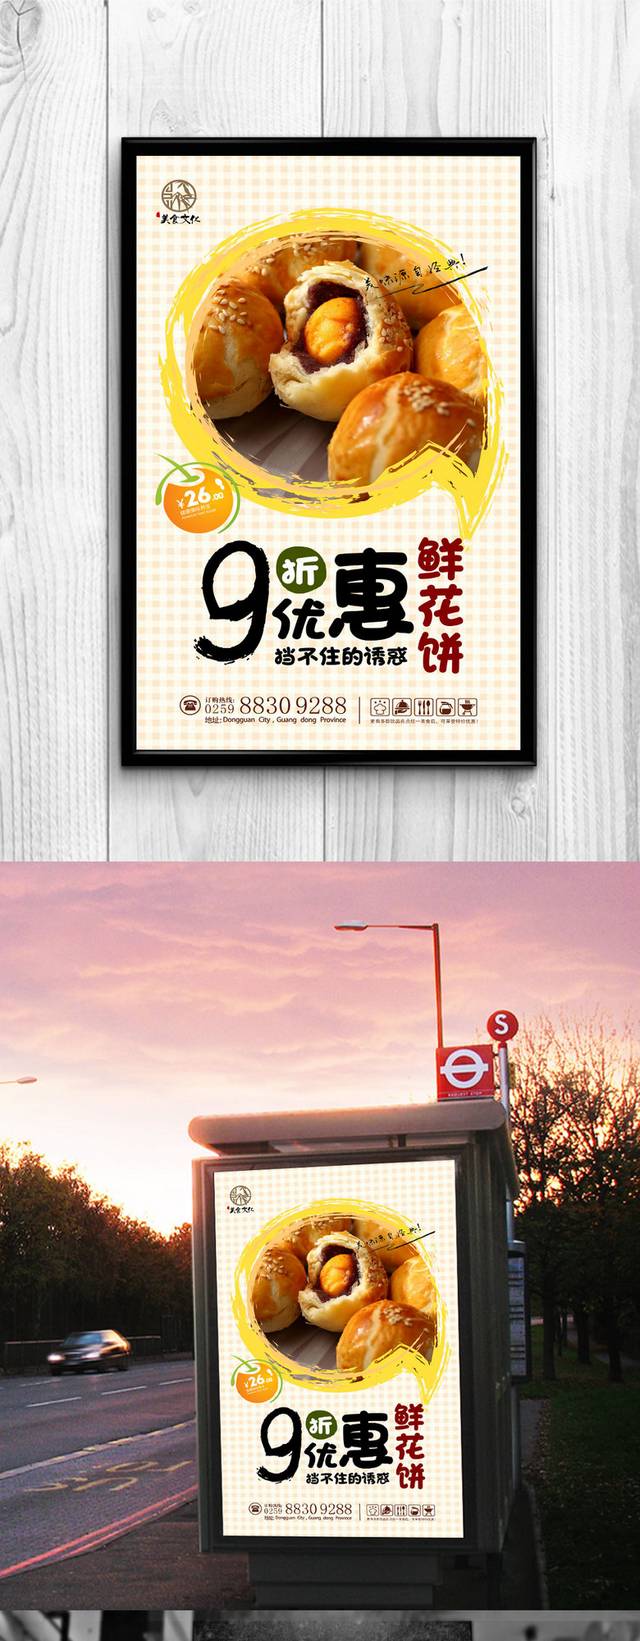 鲜花饼广告宣传海报设计